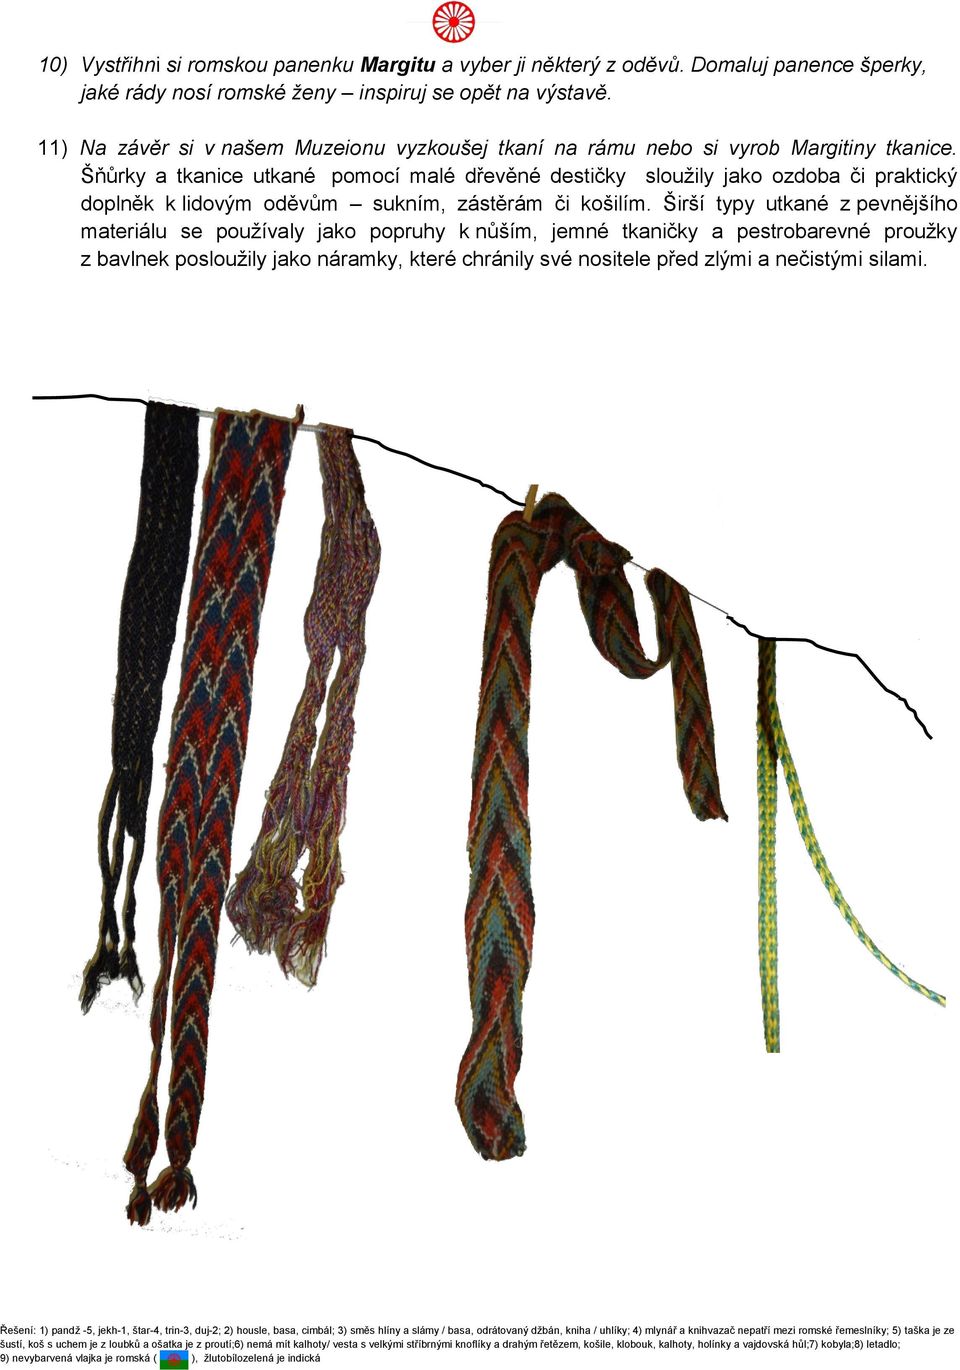 Šňůrky a tkanice utkané pomocí malé dřevěné destičky sloužily jako ozdoba či praktický doplněk k lidovým oděvům sukním, zástěrám či košilím.